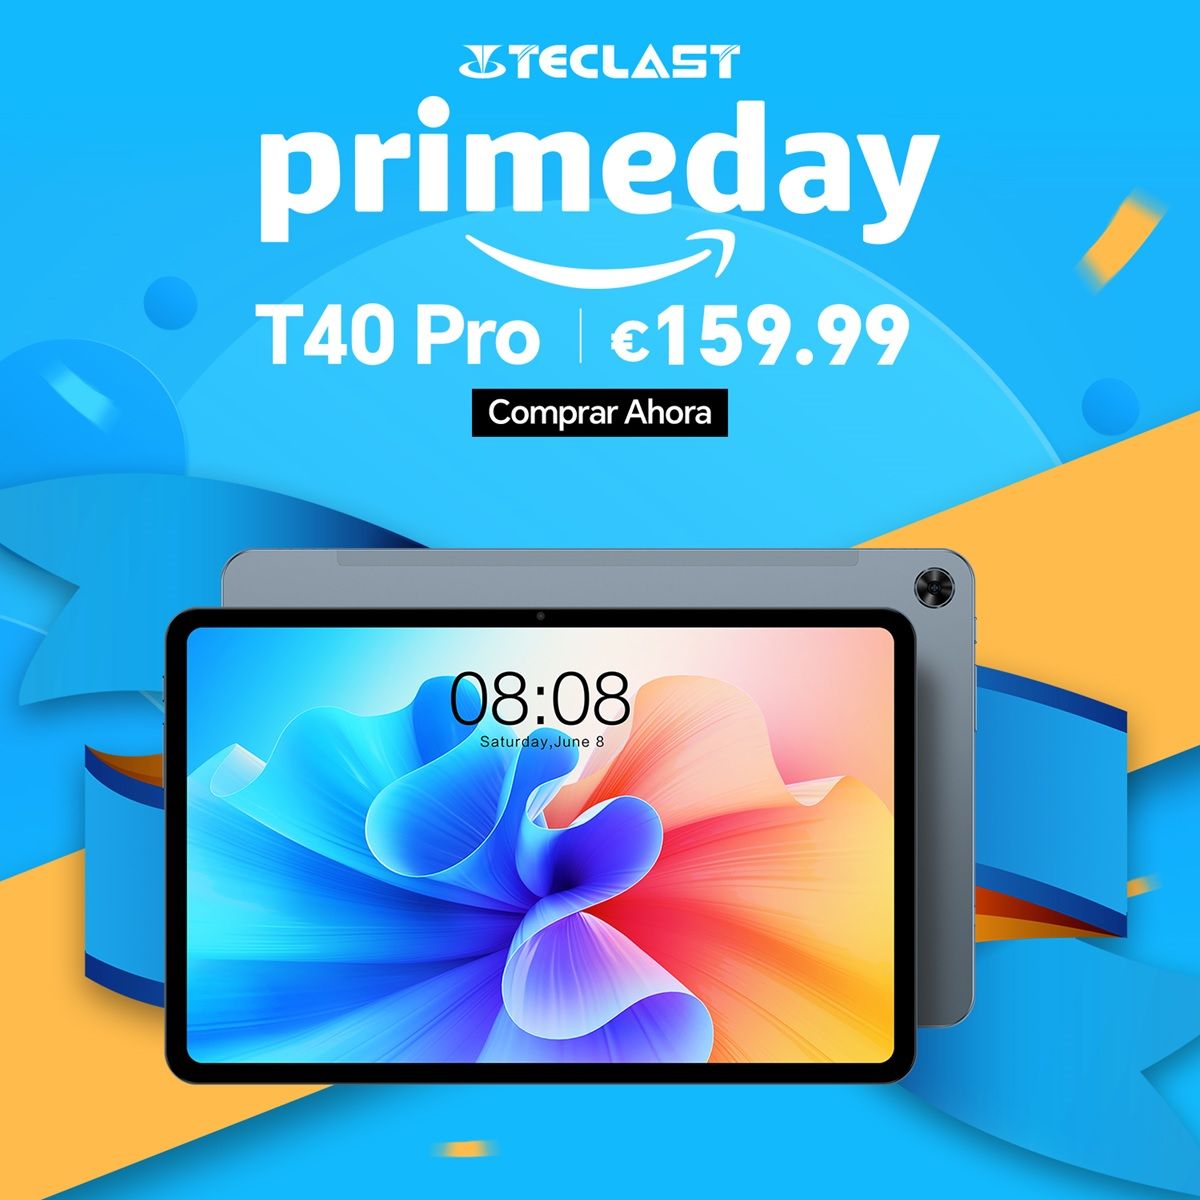 teclast t40 pro prime day